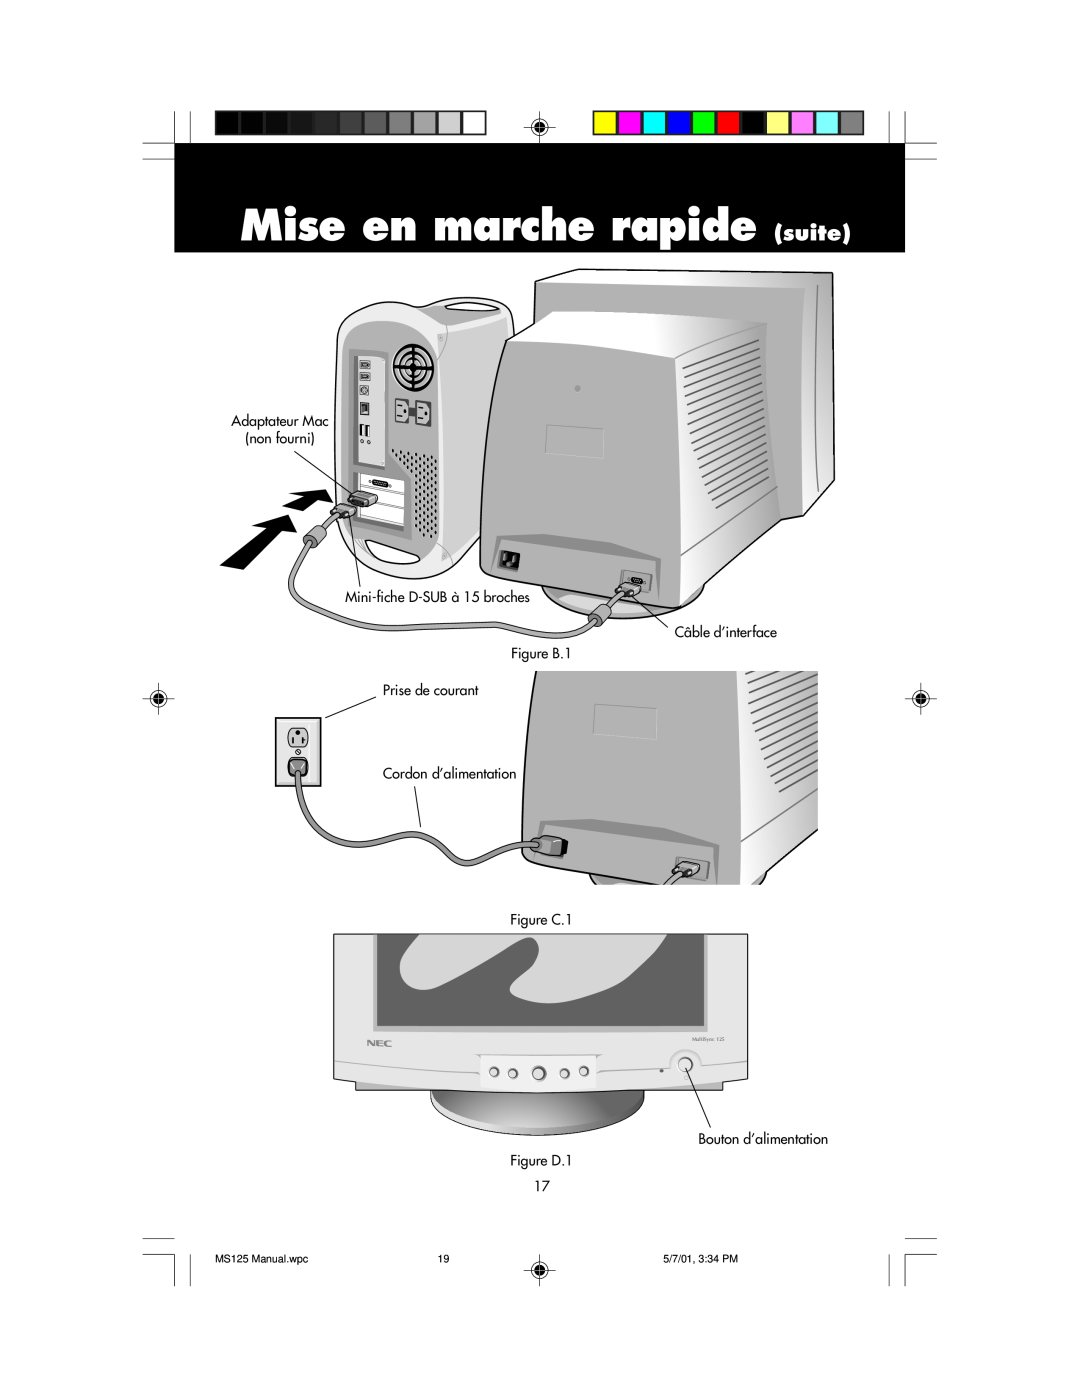 NEC MS125 manual Mise en marche rapide suite, Adaptateur Mac non fourni, Mini-fiche D-SUBà 15 broches Câble d’interface 